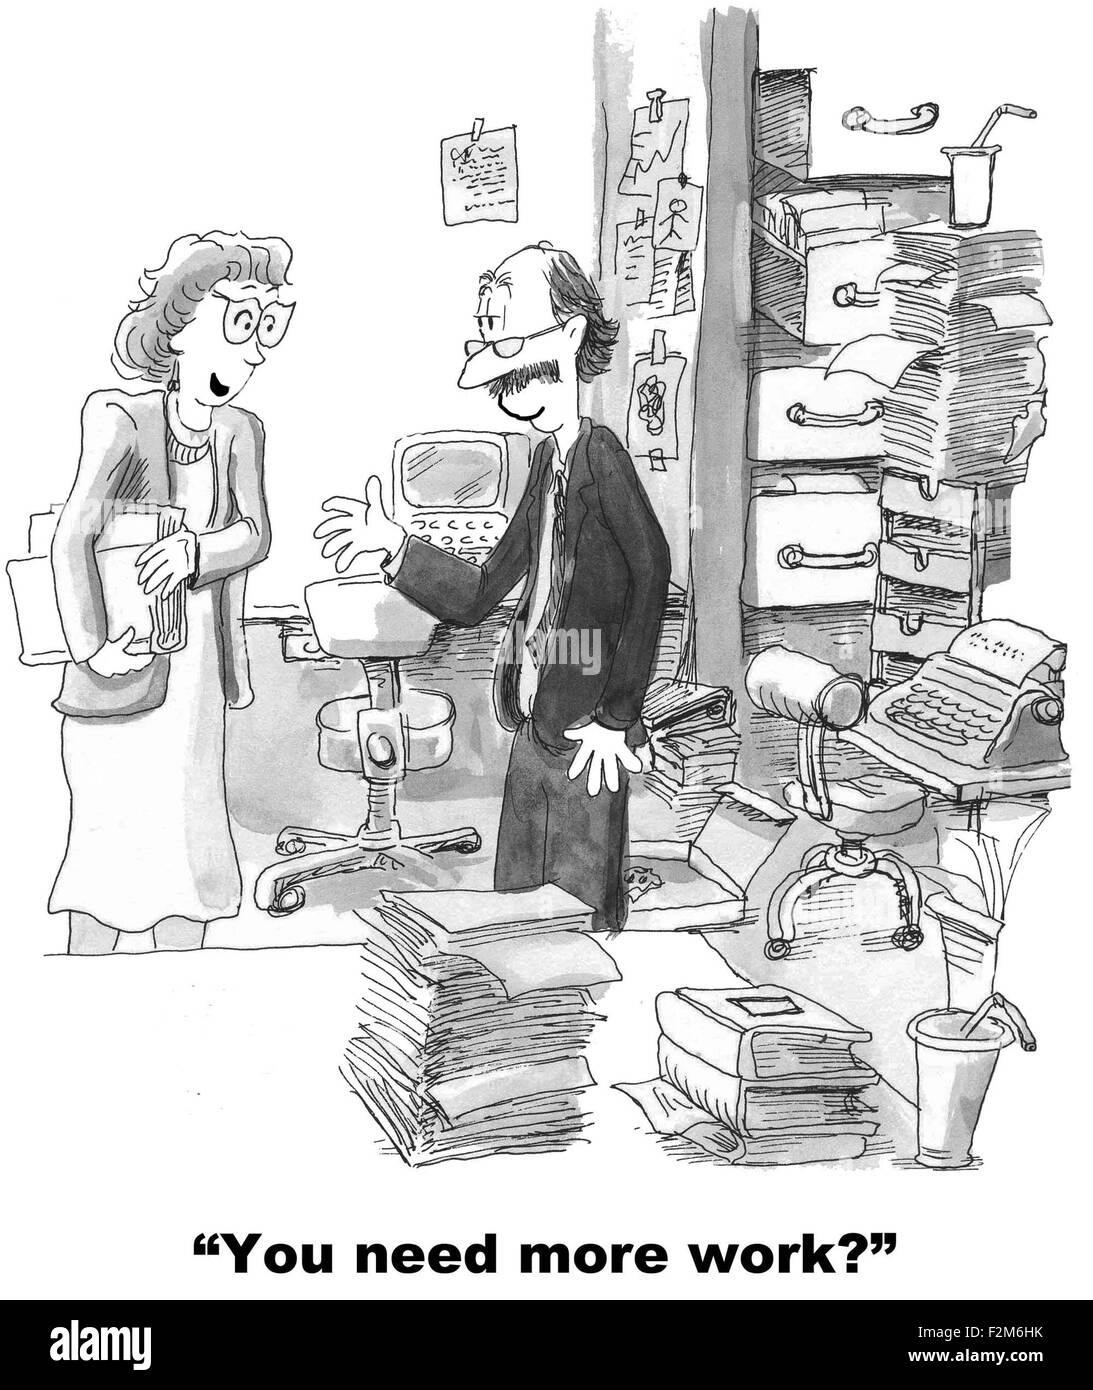 Business-Cartoon zeigt Mannes Büro überfüllt mit Papierkram.  Chef fragt ihn, "Sie brauchen mehr Arbeit?". Stockfoto